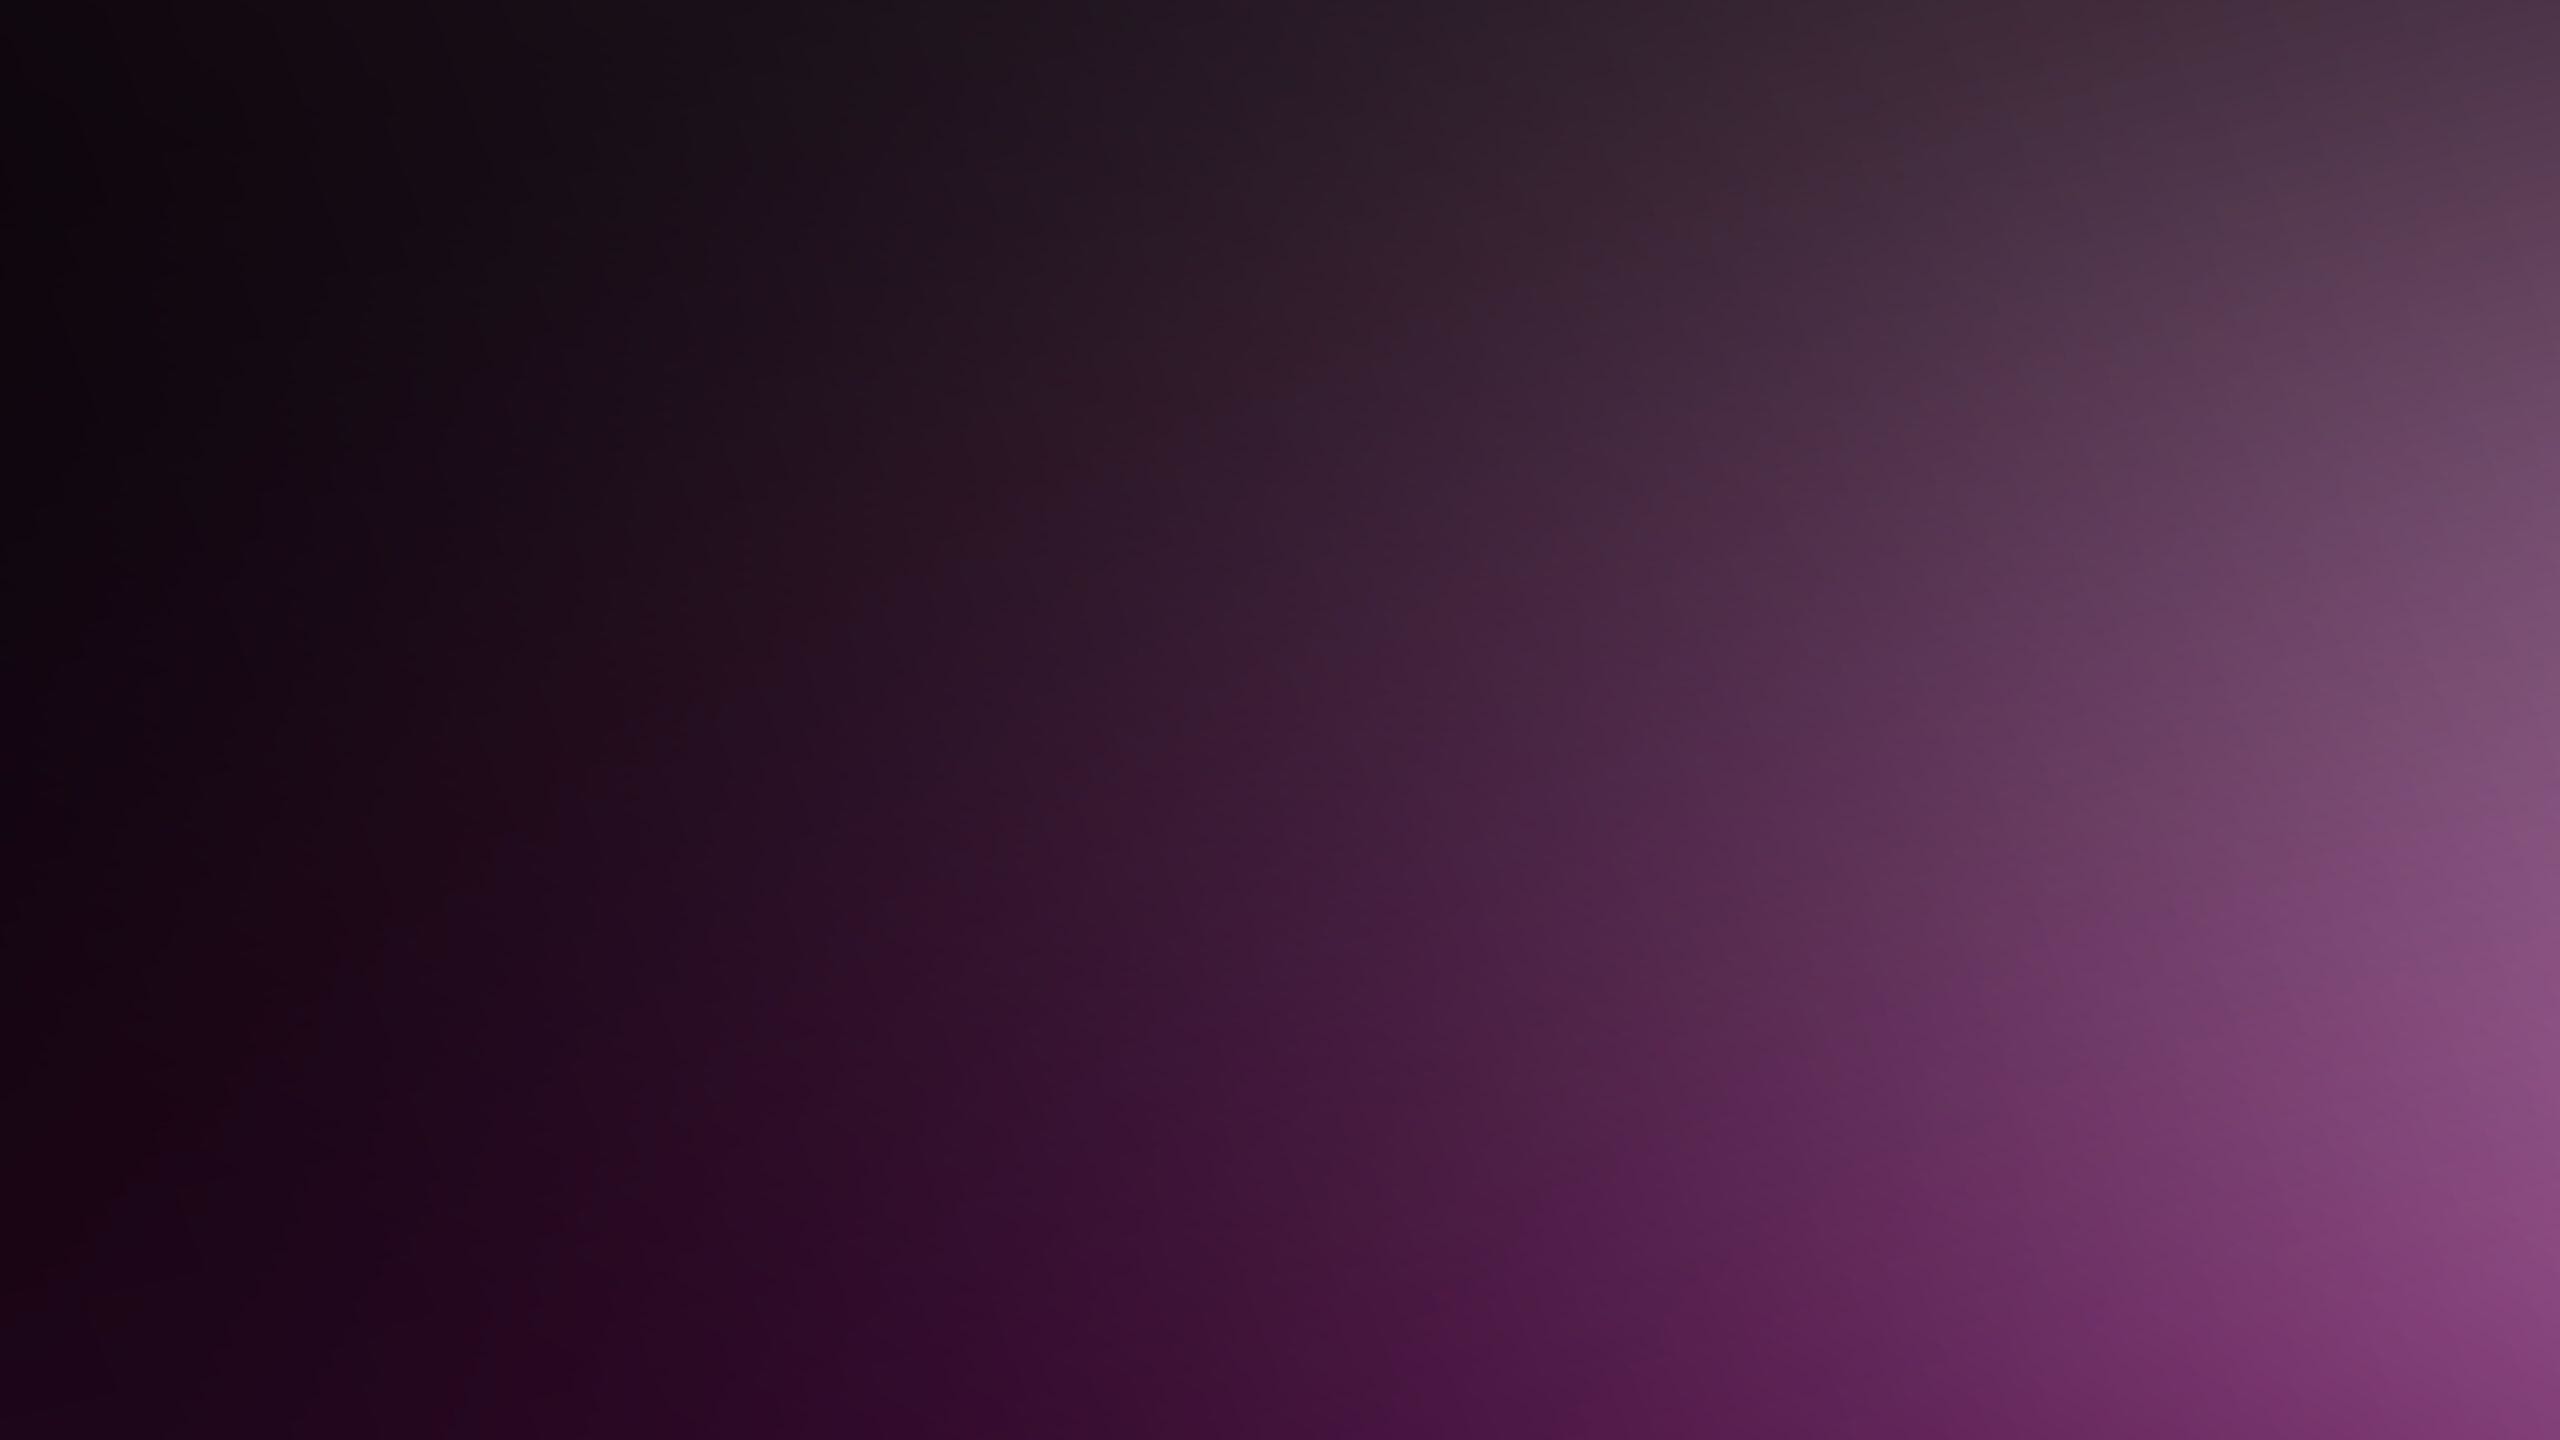 2560x1440 Dark Purple Background wallpaper - 1267141